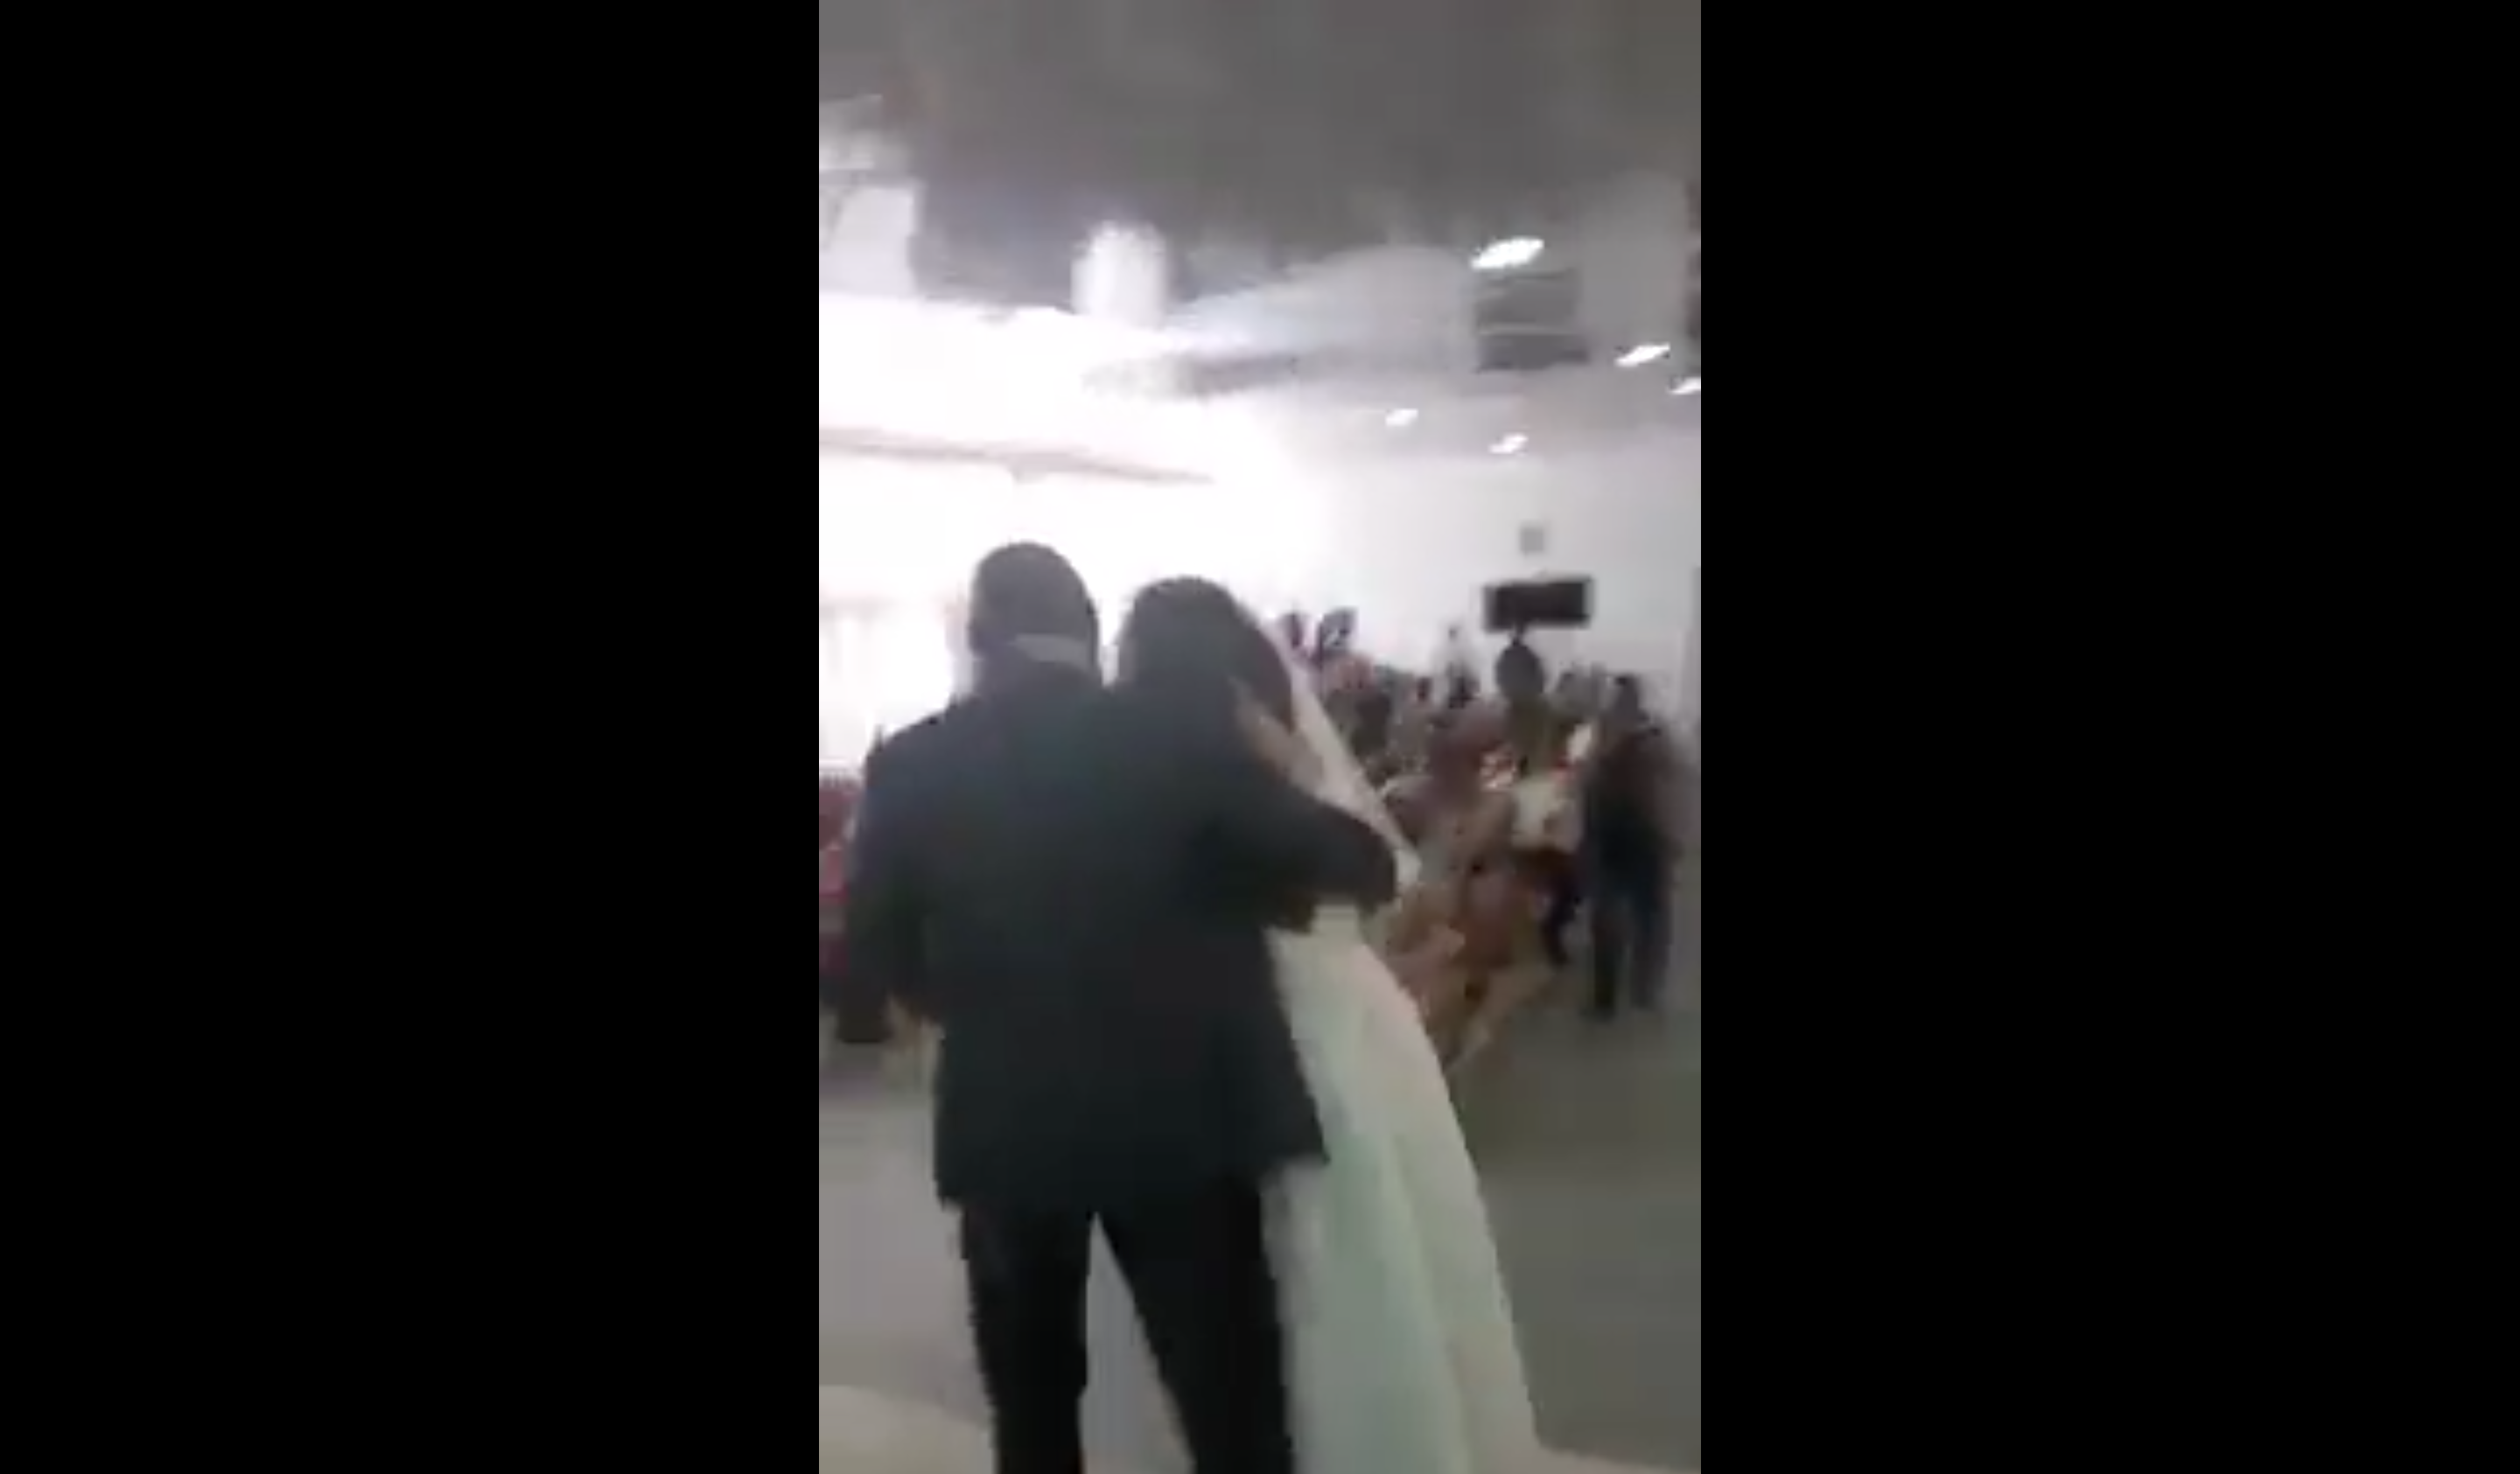 Le marié tente d'écarter l'intruse pour que la cérémonie puisse se poursuivre. | Source : Facebook.com/Maguqa